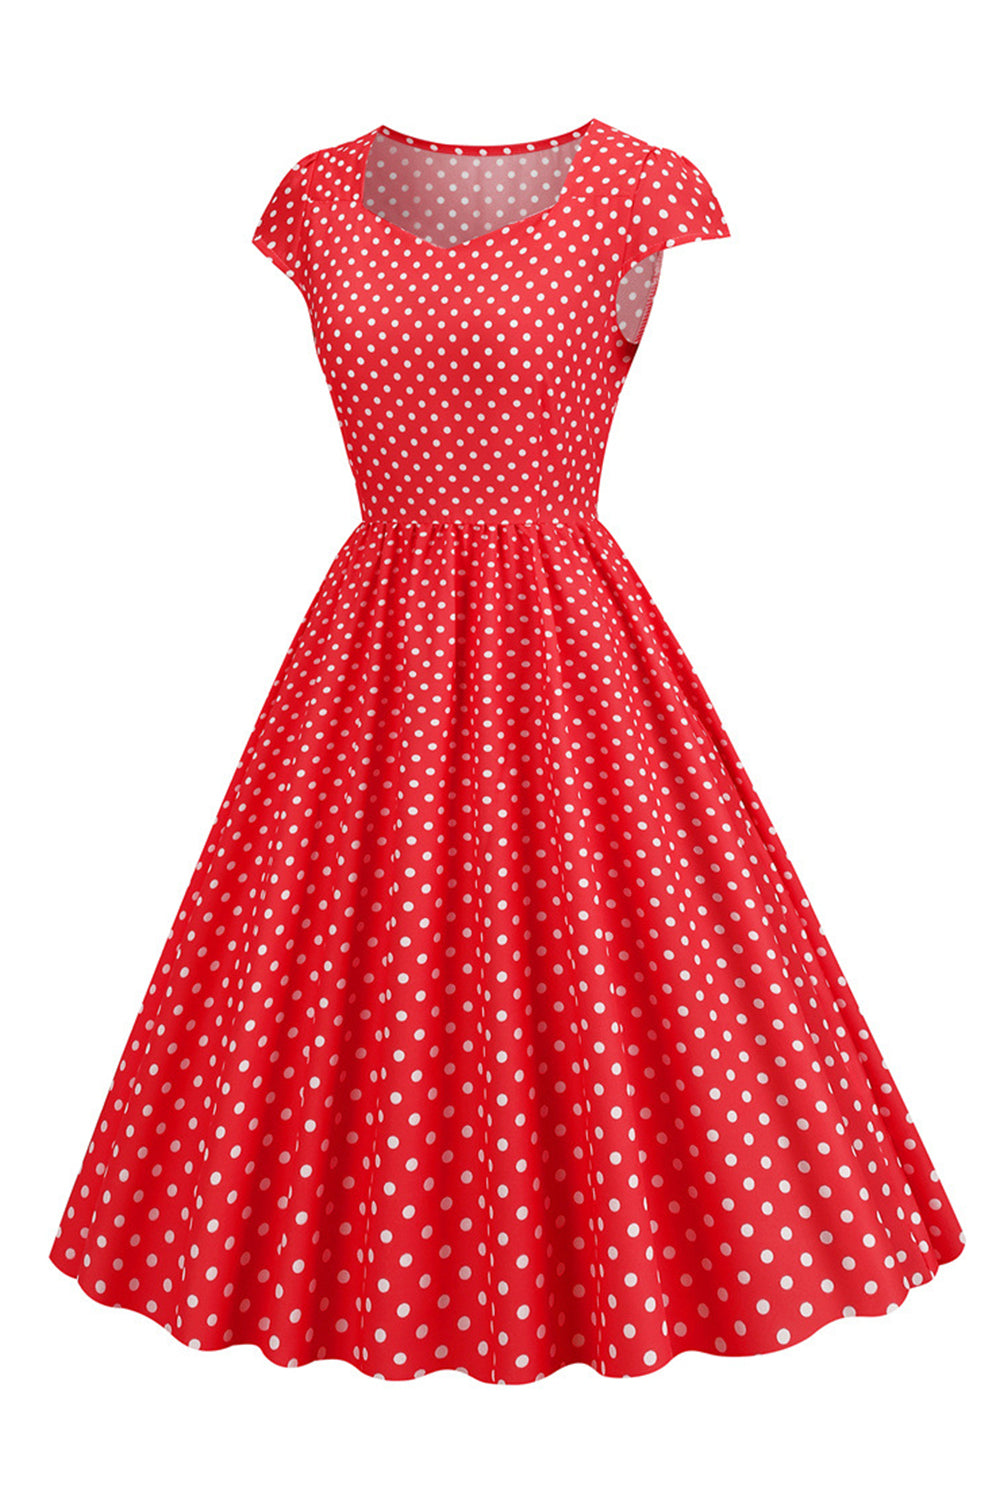 ZAPAKA Women Vintage Dress A Line Polka Dots Swing 1950s Dress